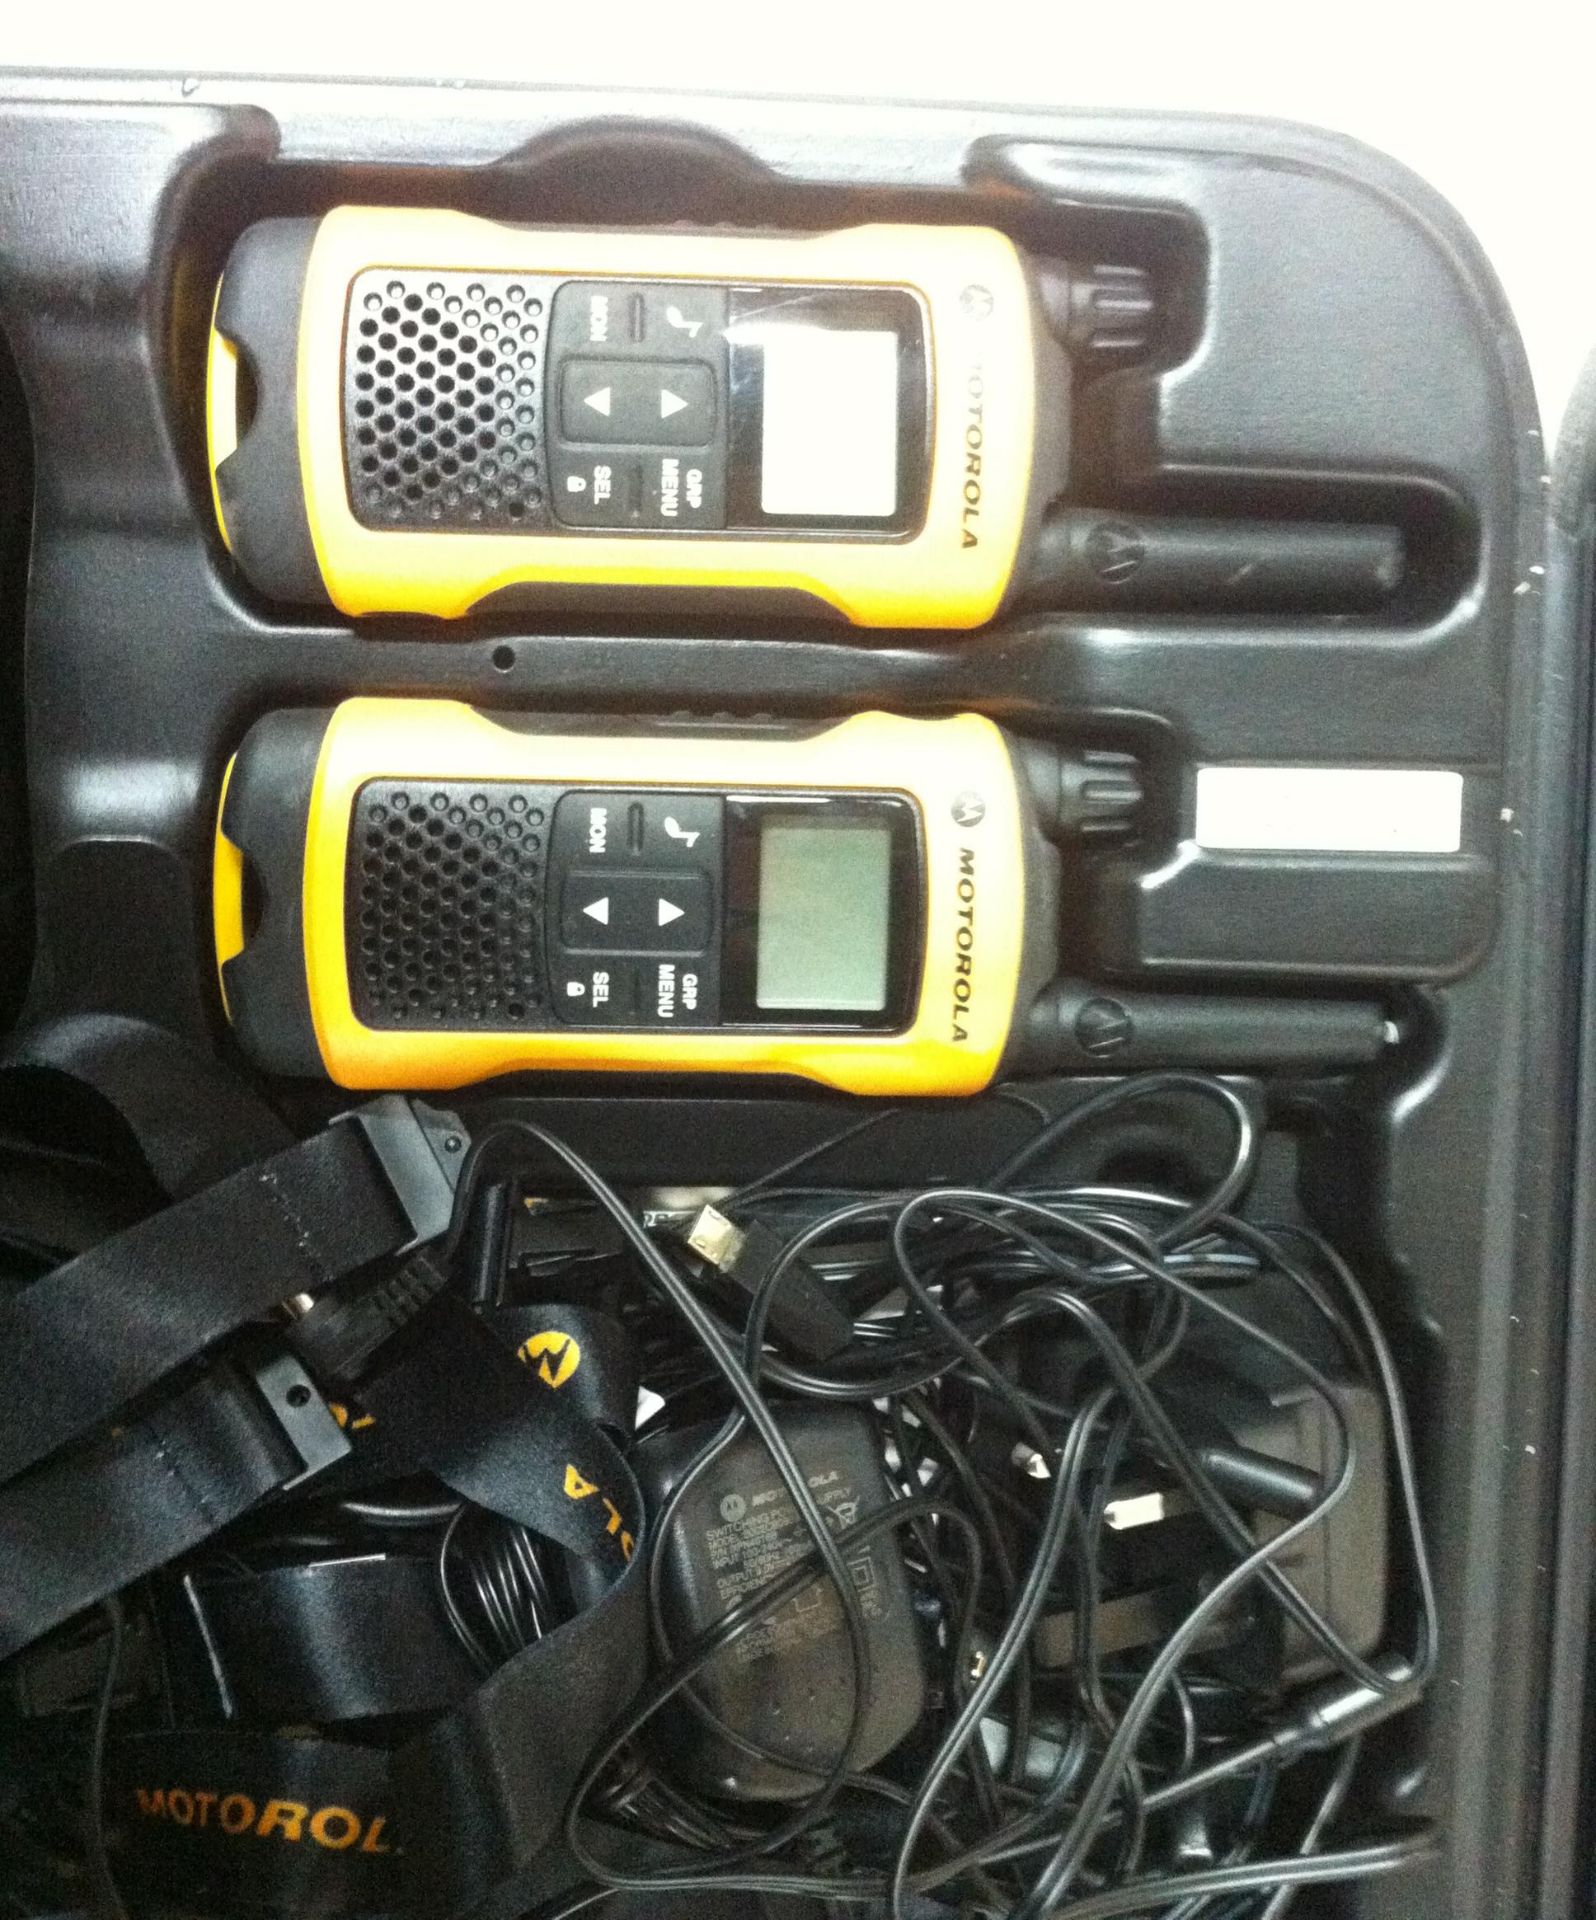 Set of Motorola Walkie Talkies - Image 3 of 3